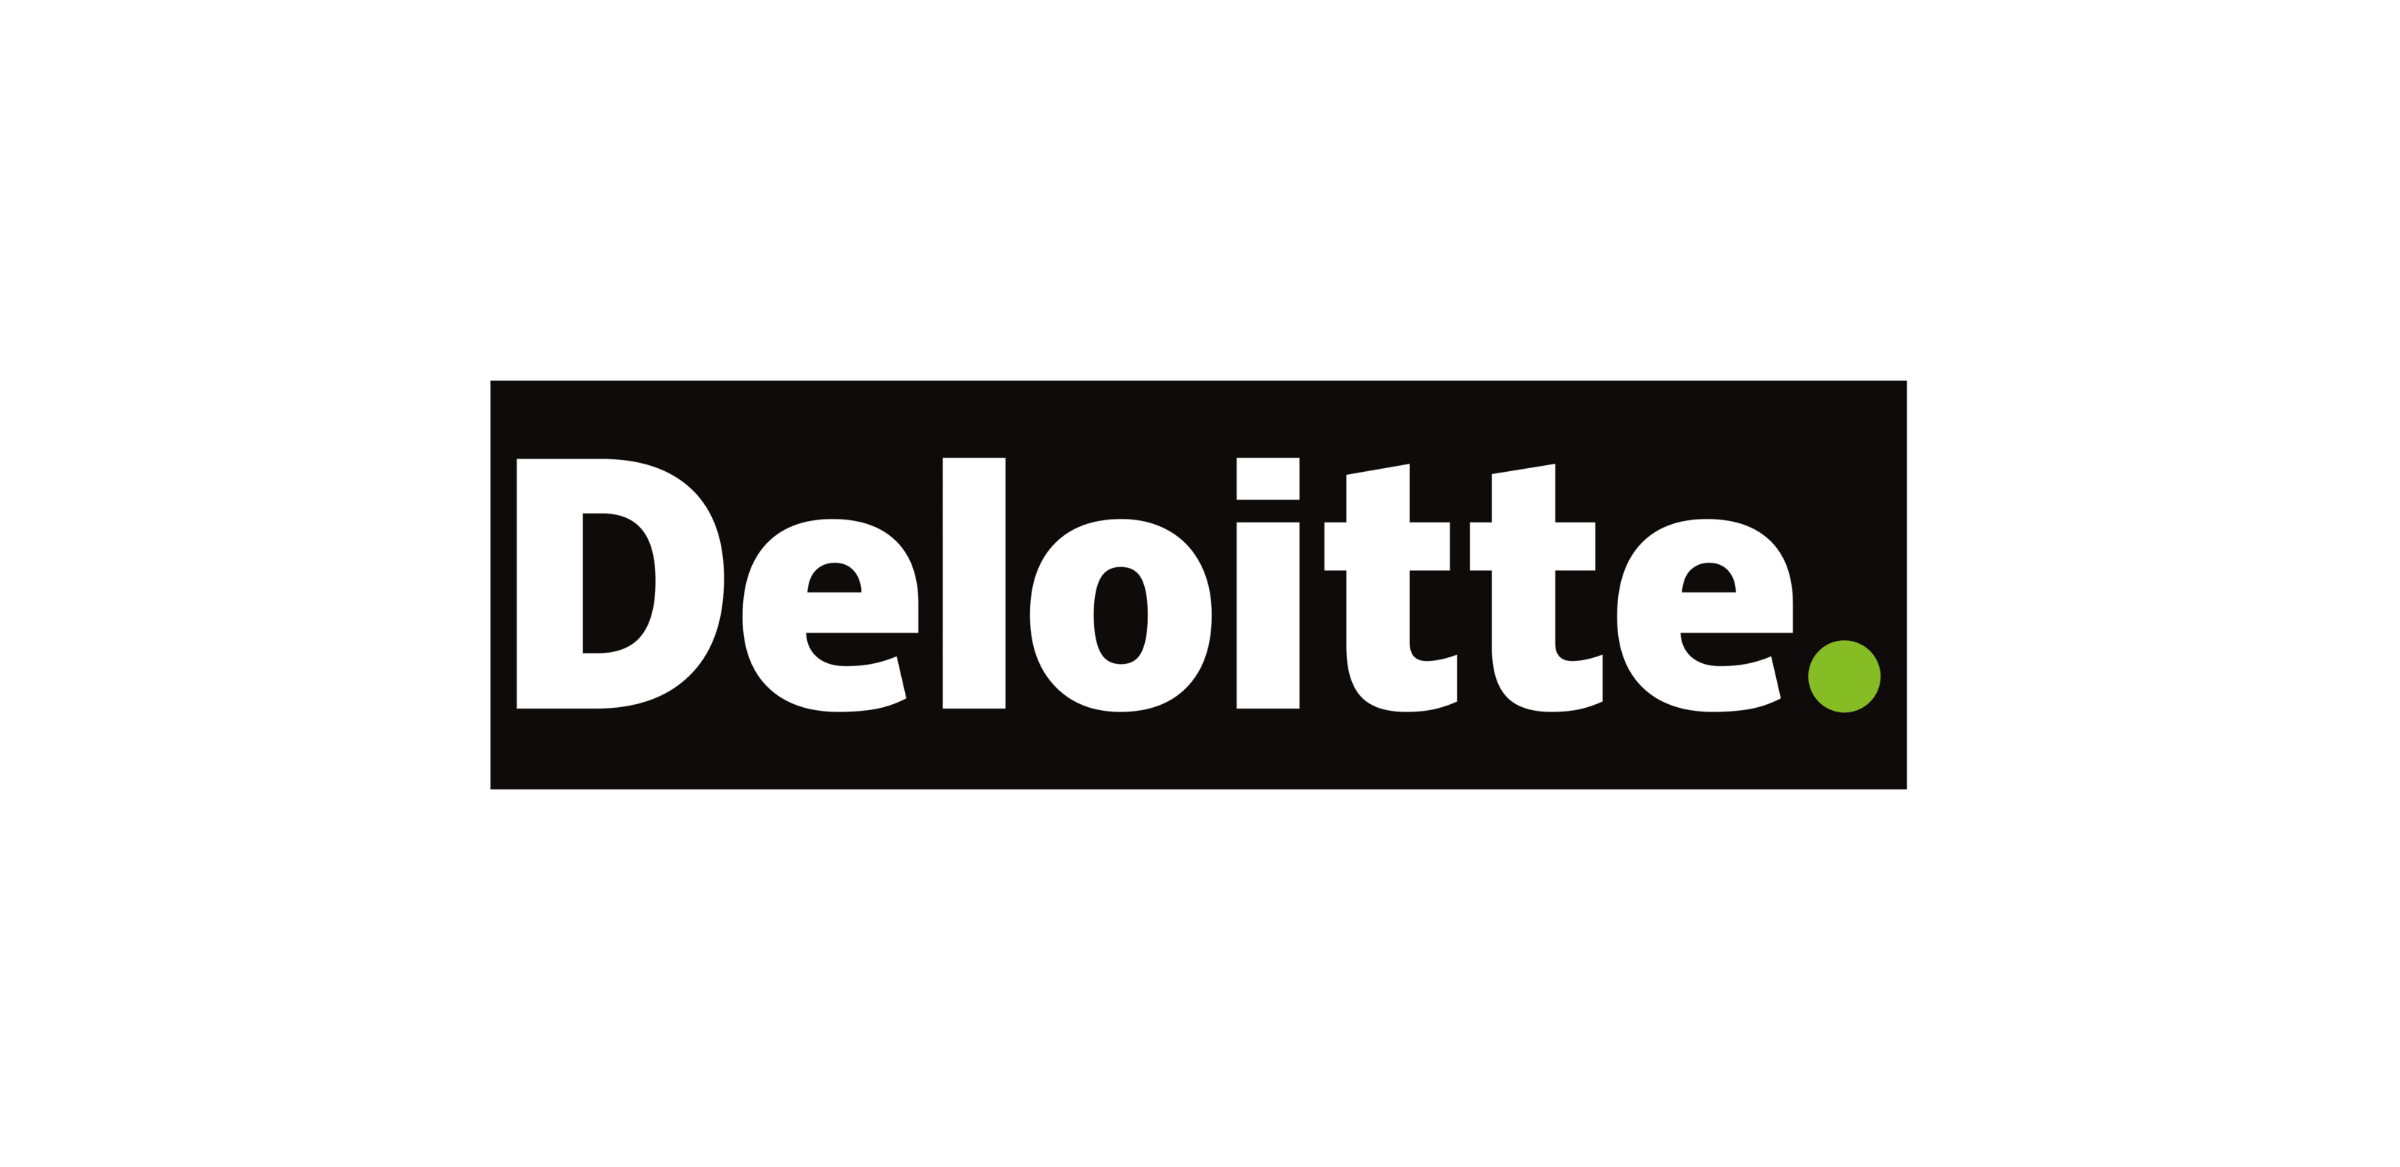 deloitte-logo-p_59758786 (1)